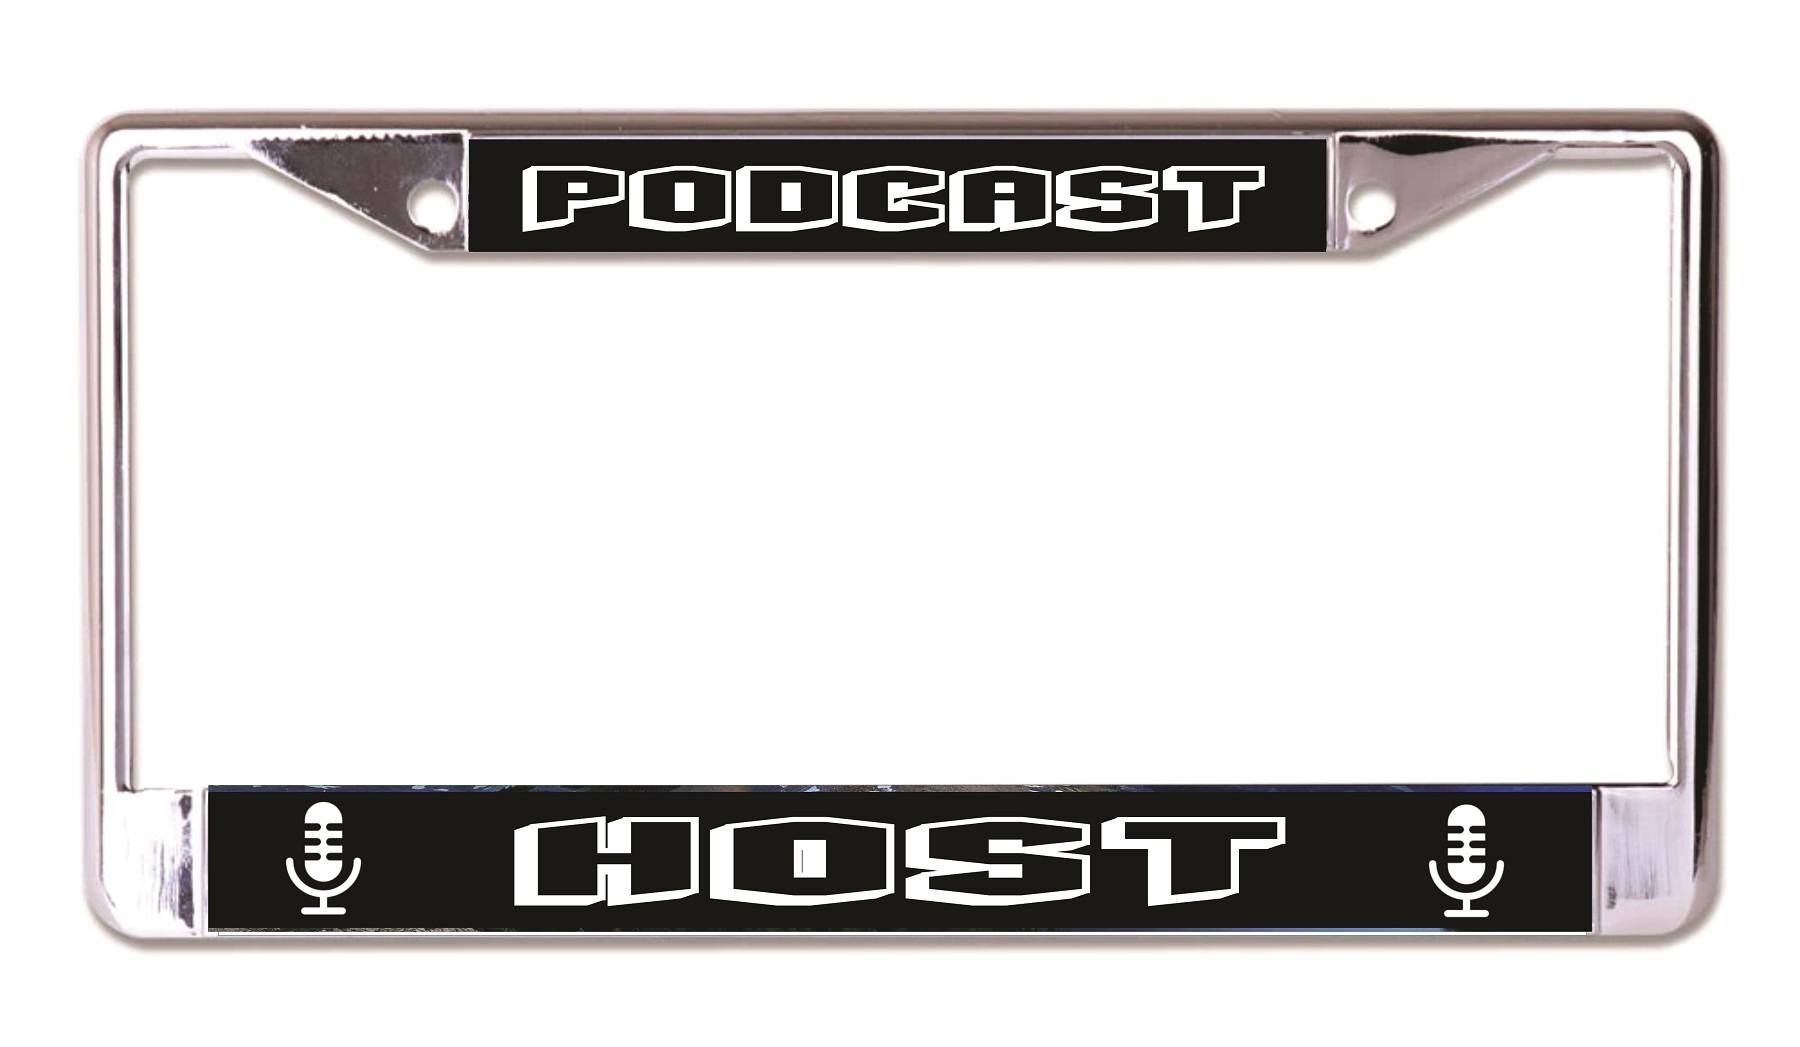 Podcast Host Chrome License Plate FRAME